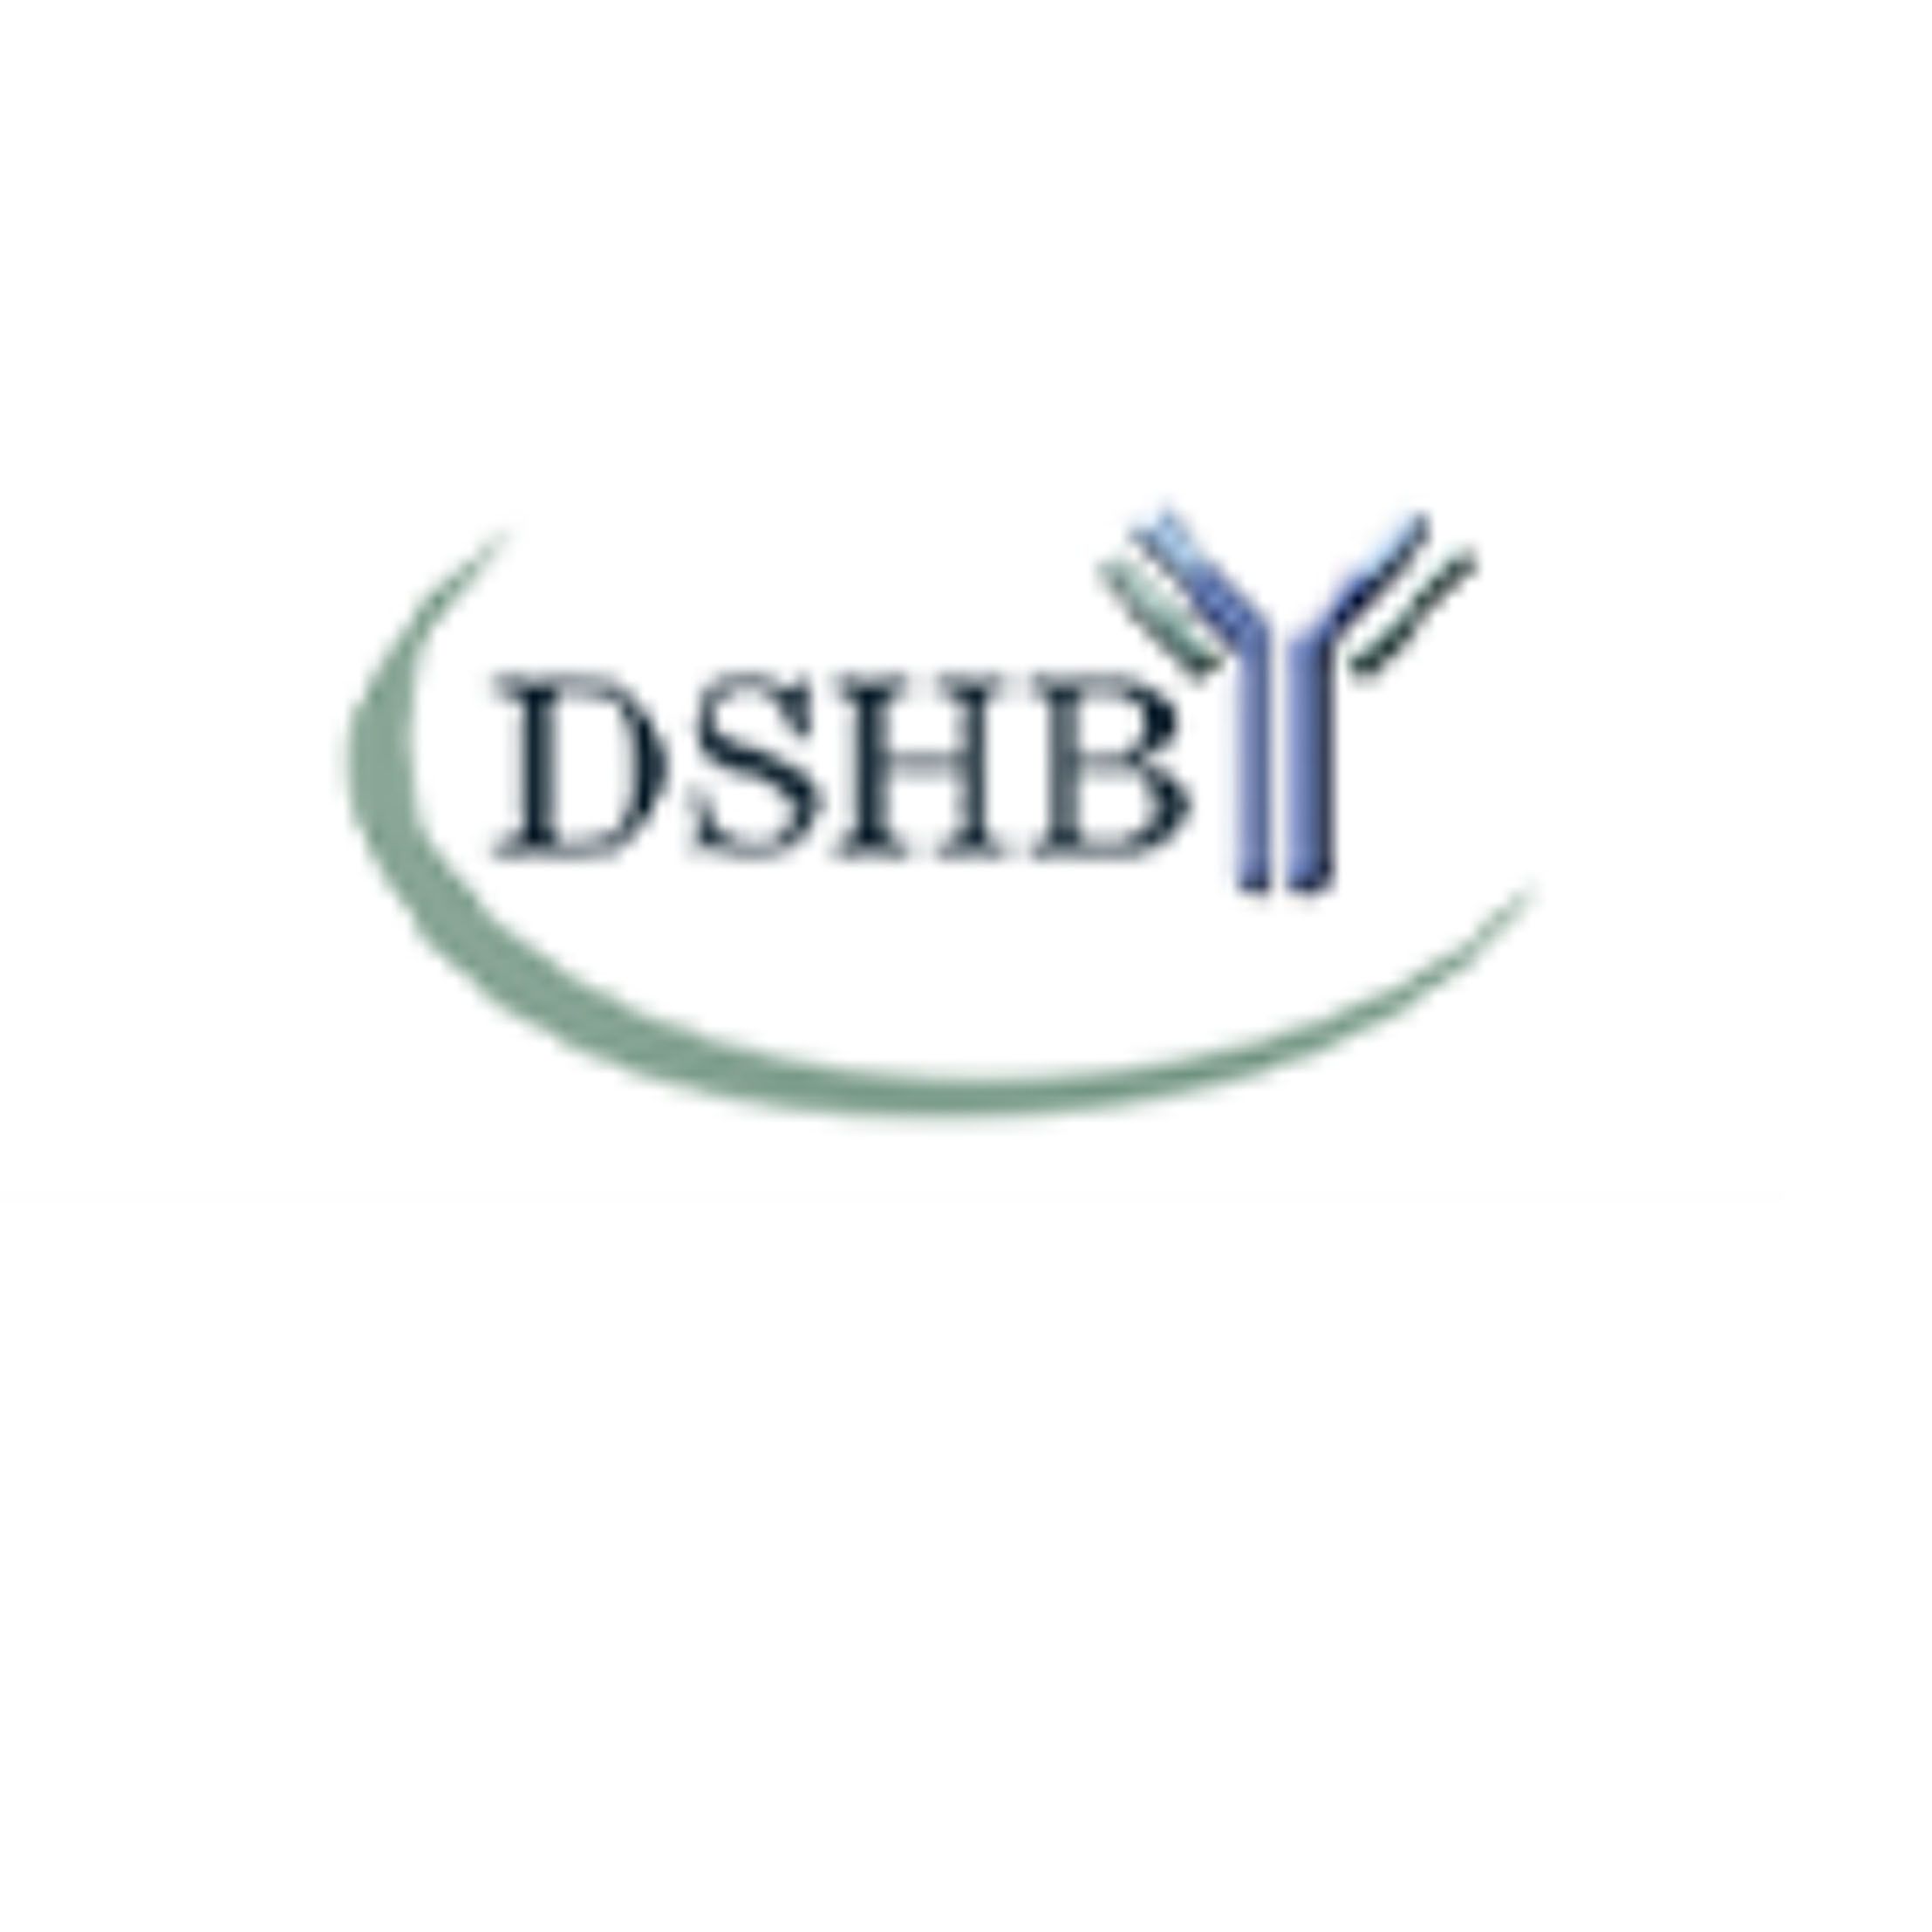 DSHB ( 美国 ) 果蝇抗体、细胞标记、粘菌、细胞骨架蛋白、肌营养不良症相关蛋白